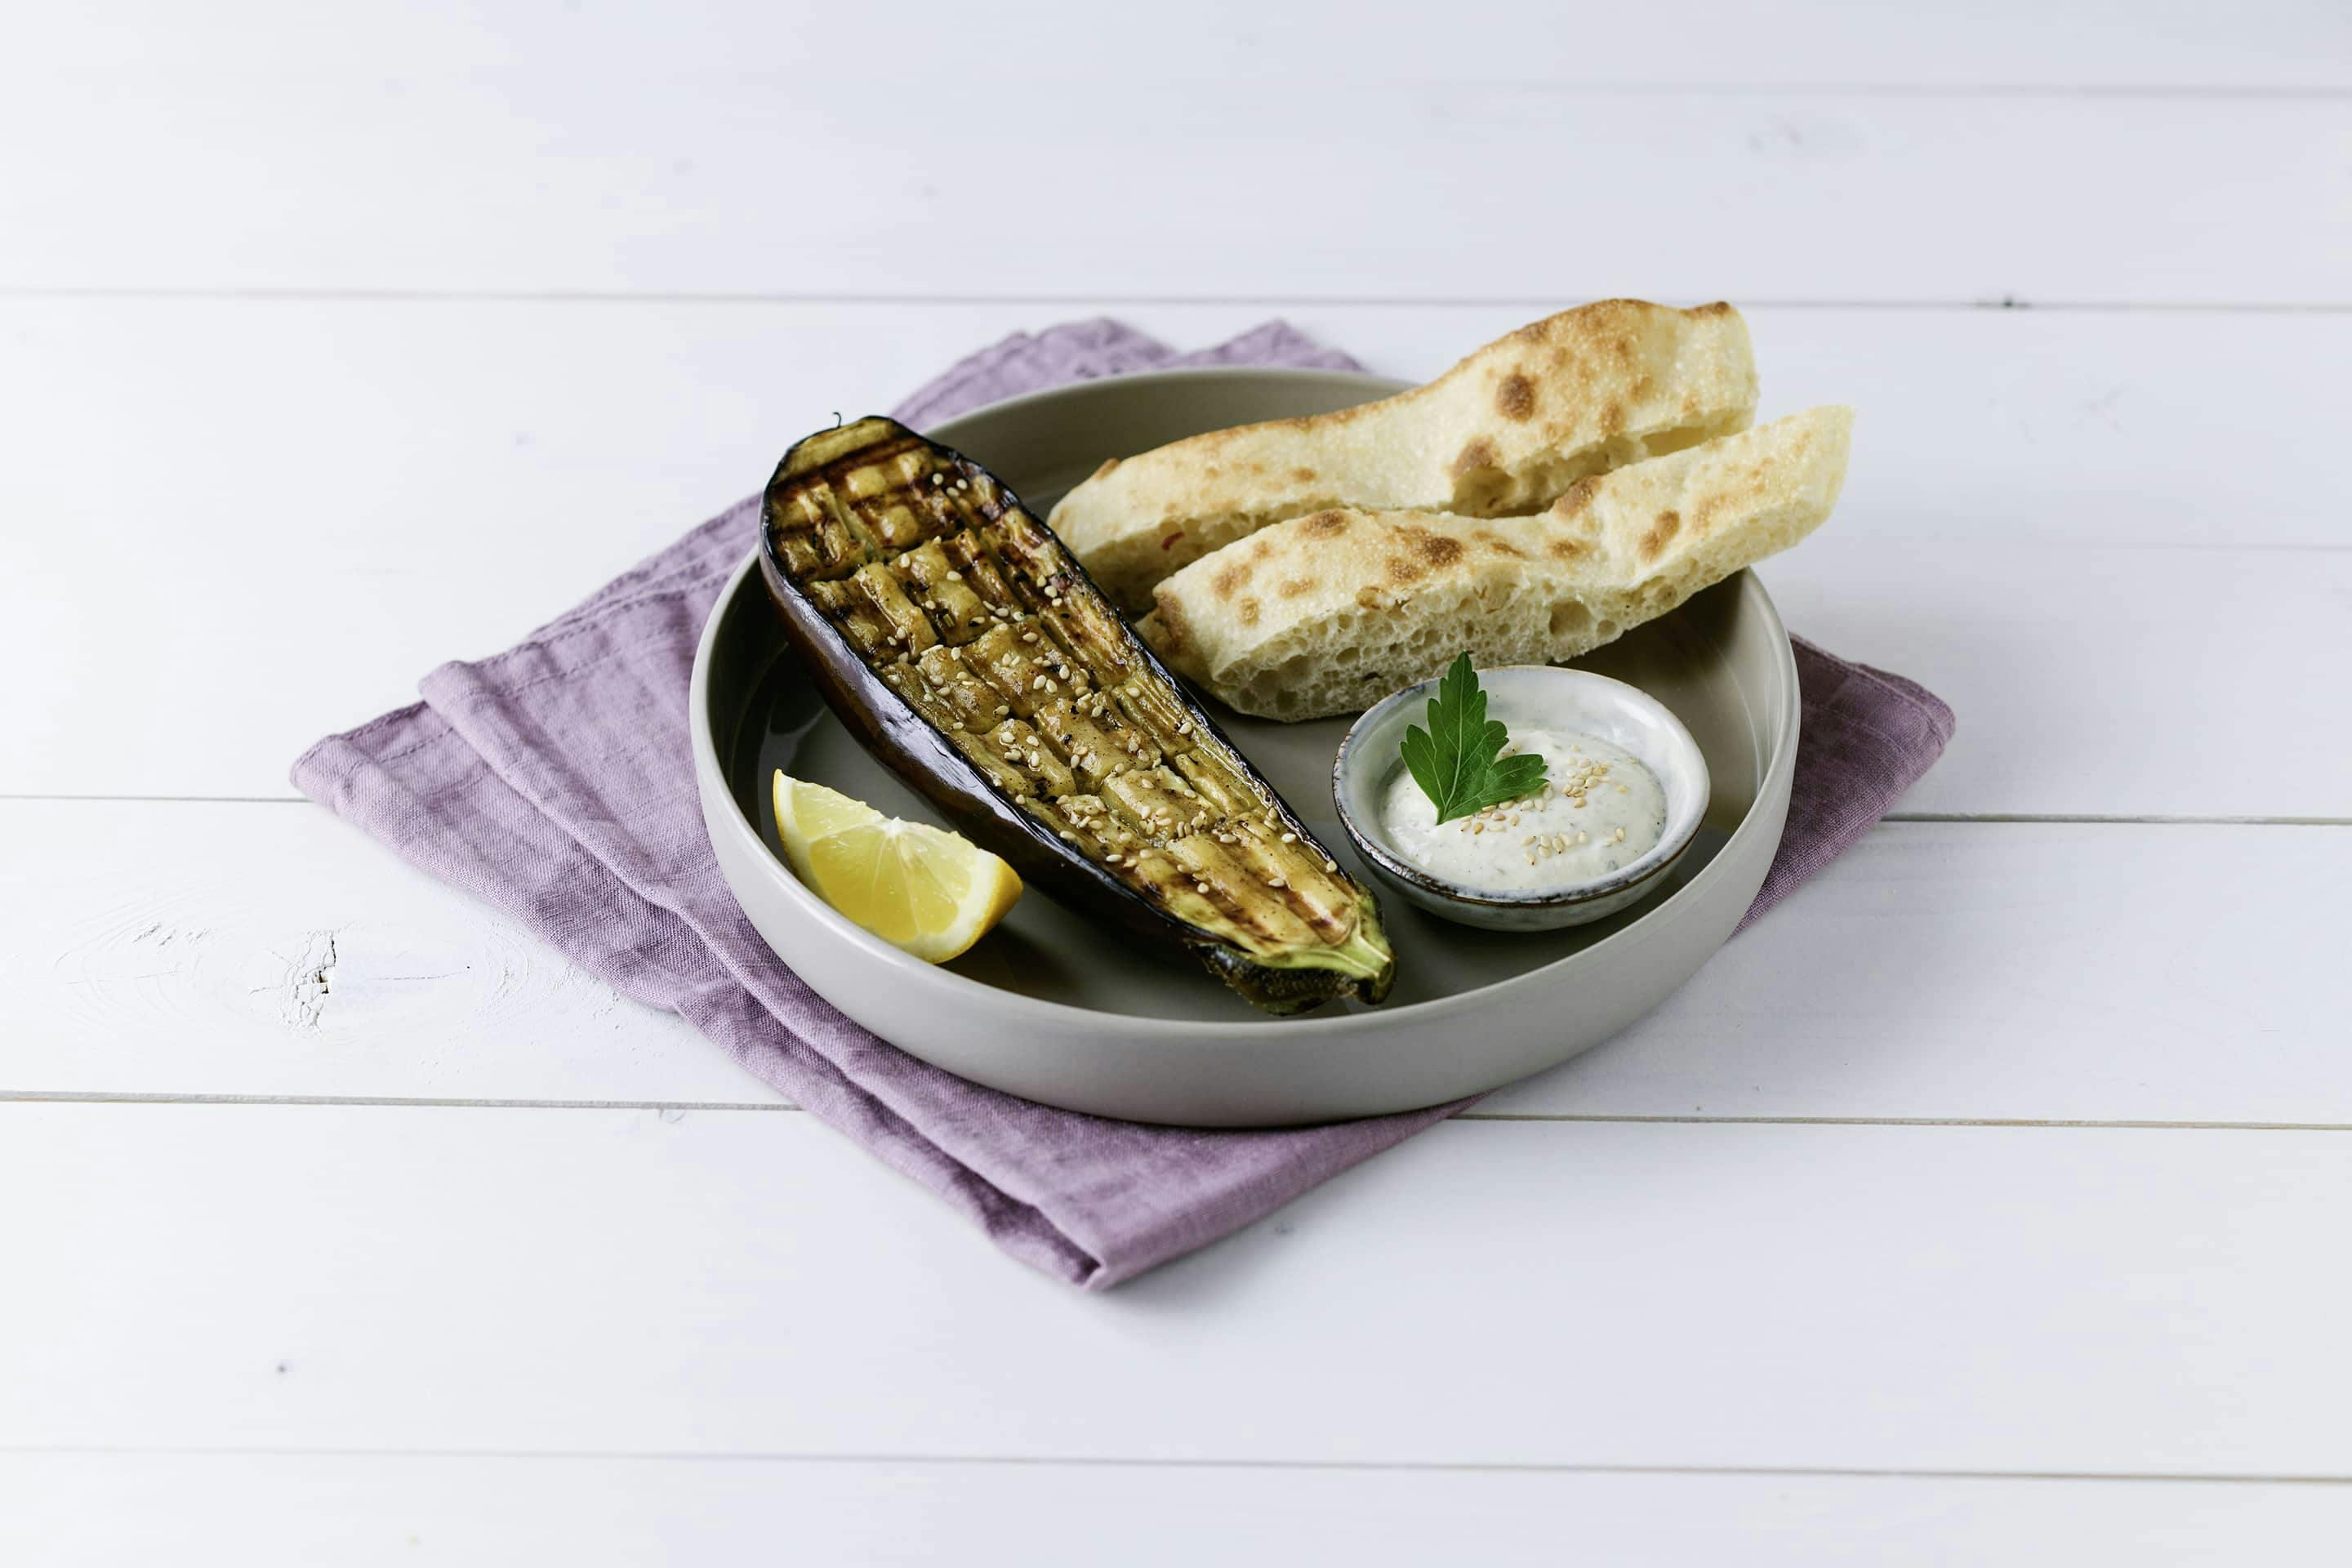 gegrillte Melanzani mit Pita und Sesam-Dip auf einem grauen Teller mit lilafarbener Serviette